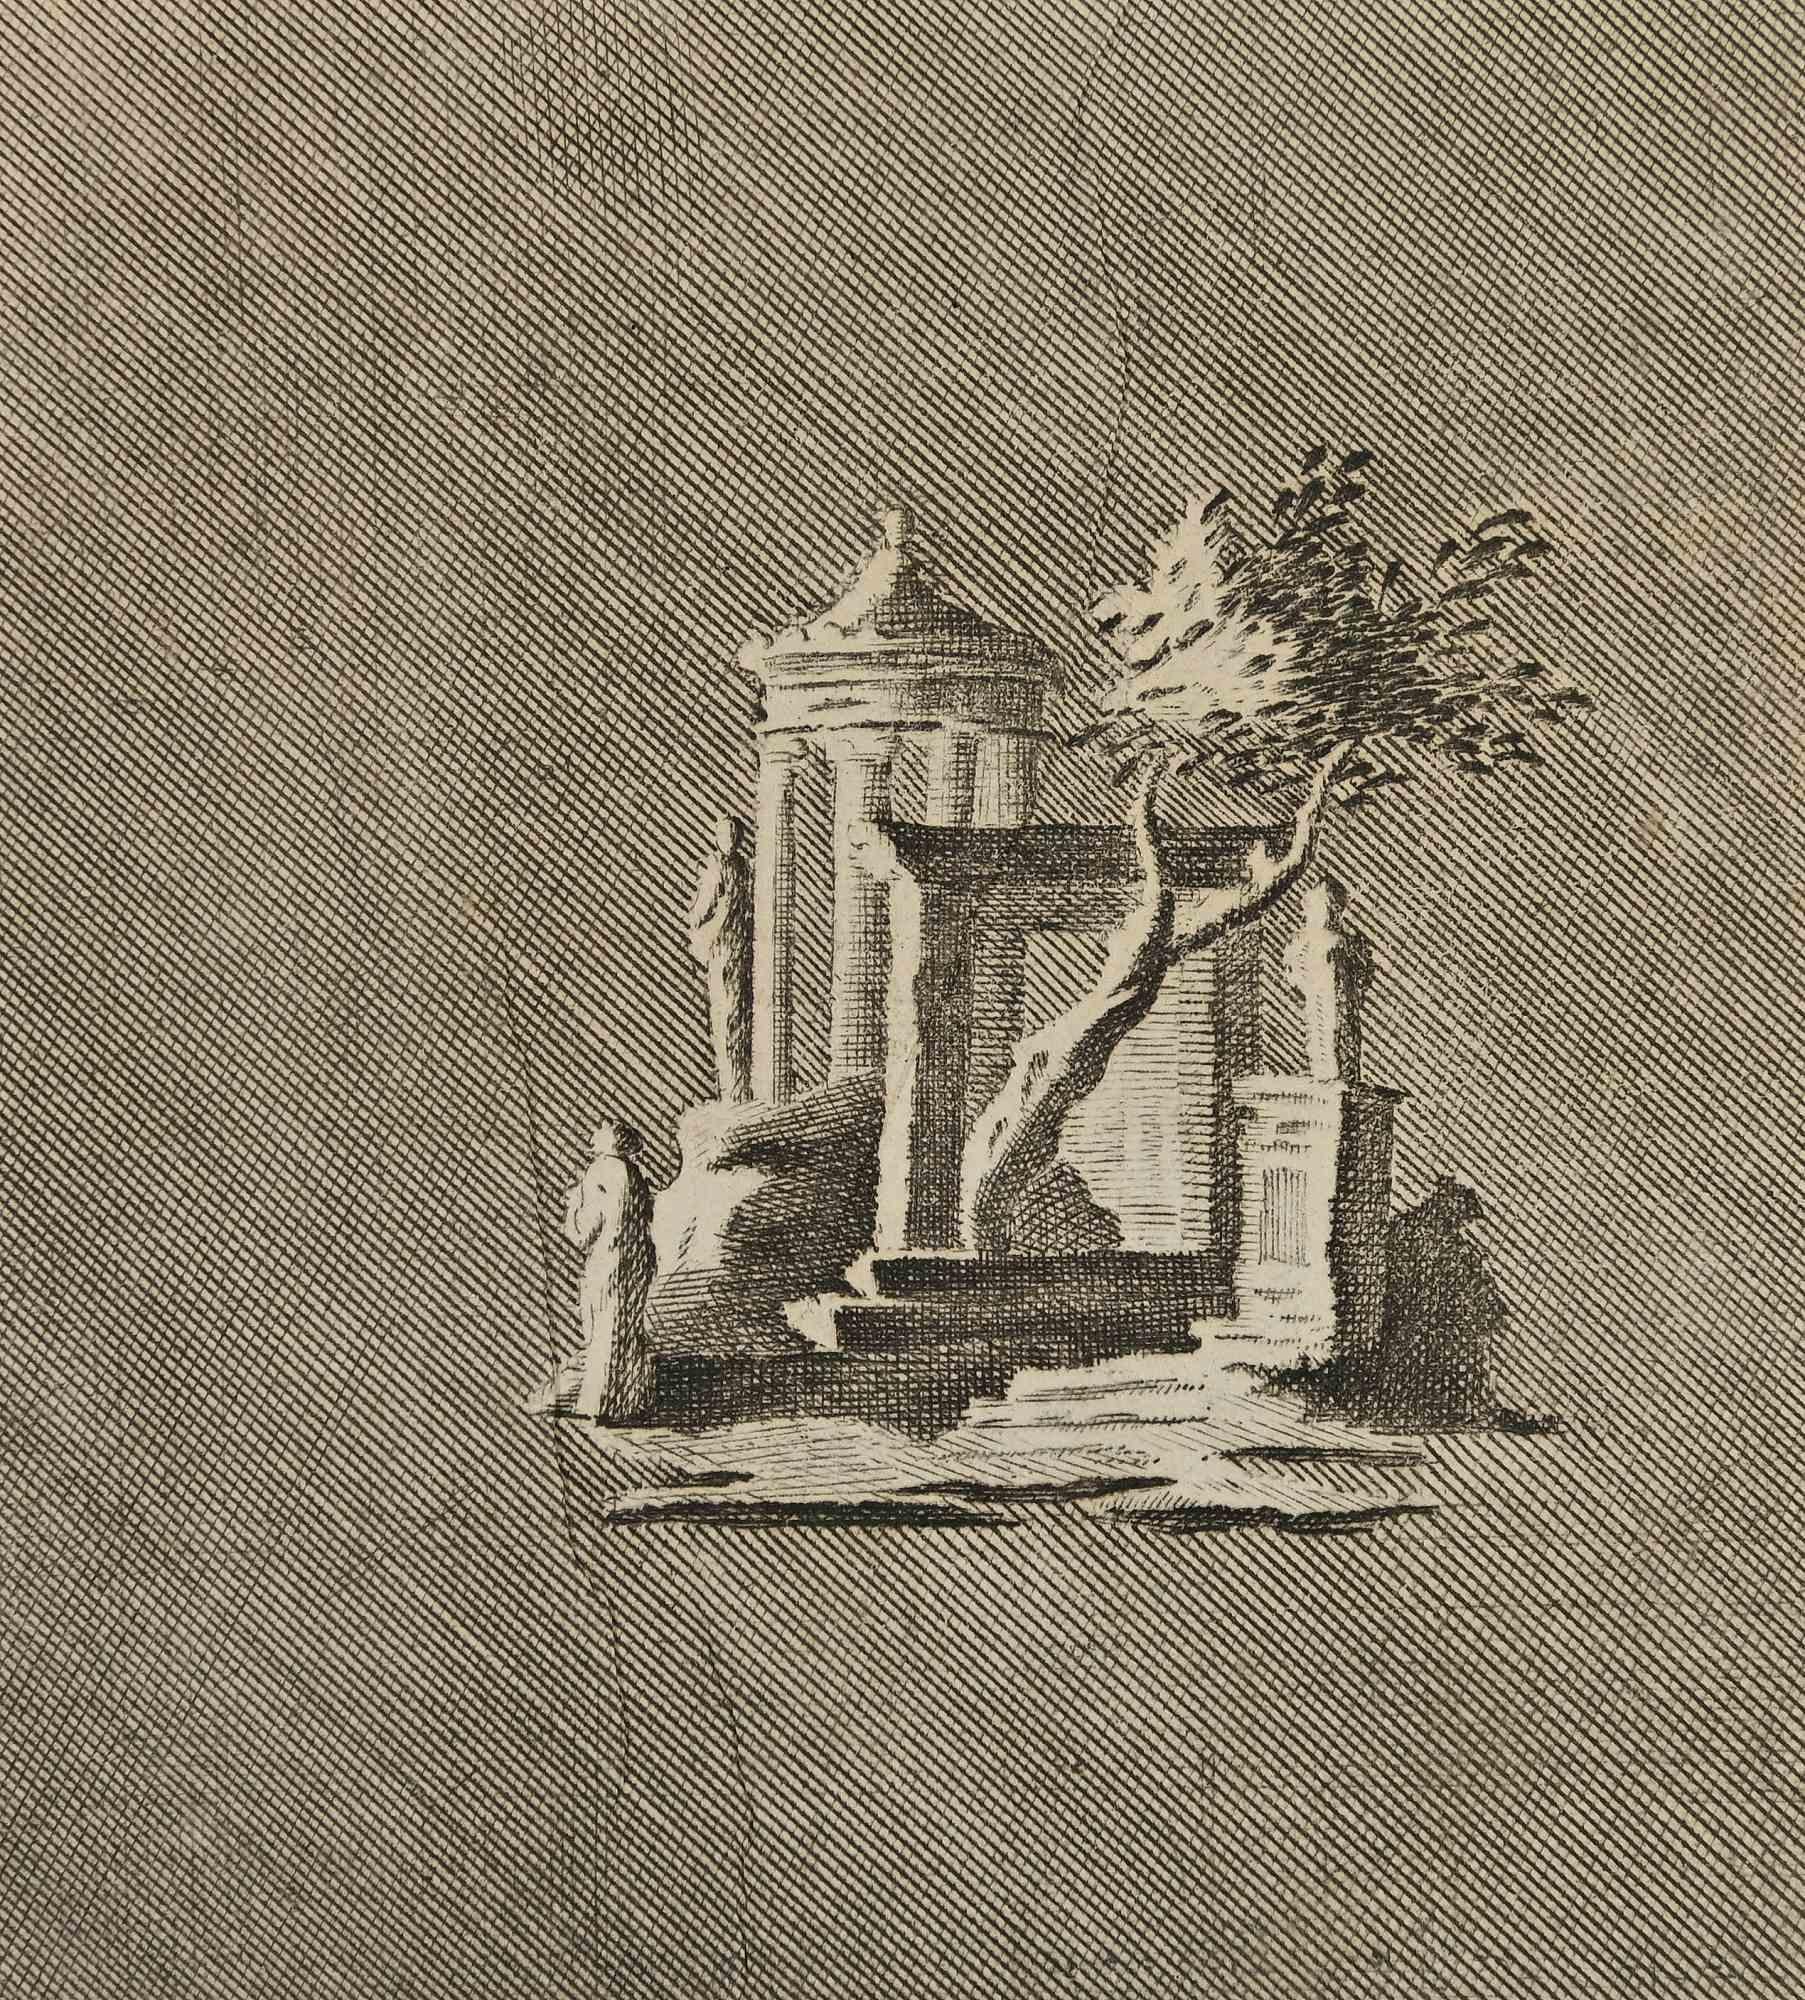 Figurative Print Unknown - Temple romain ancien - gravure d'auteurs divers - 18ème siècle